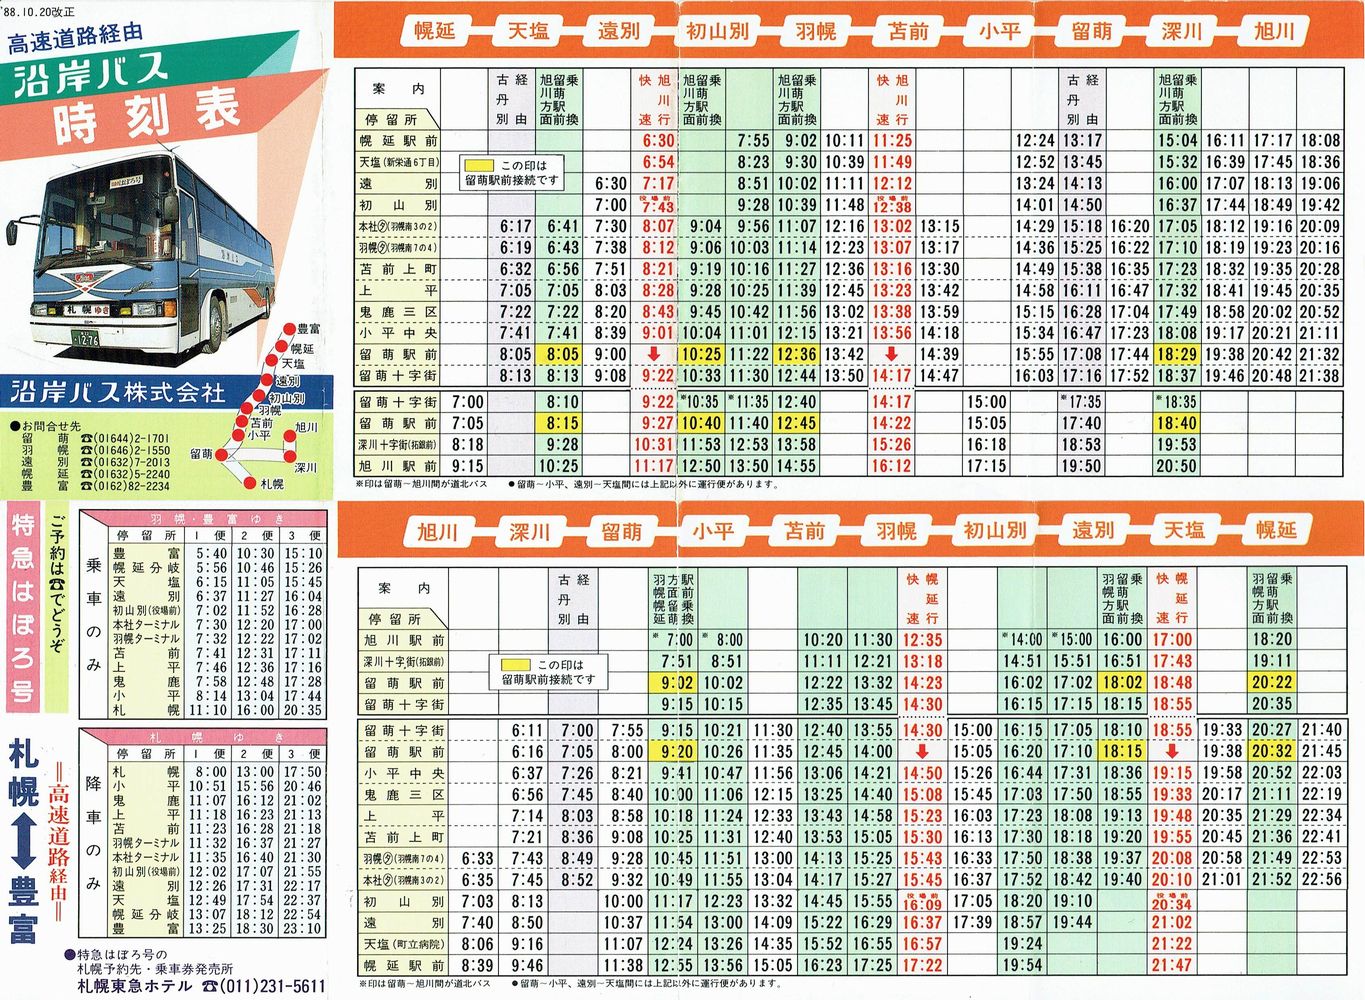 1988-10-20改正_沿岸バス_ポケット時刻表